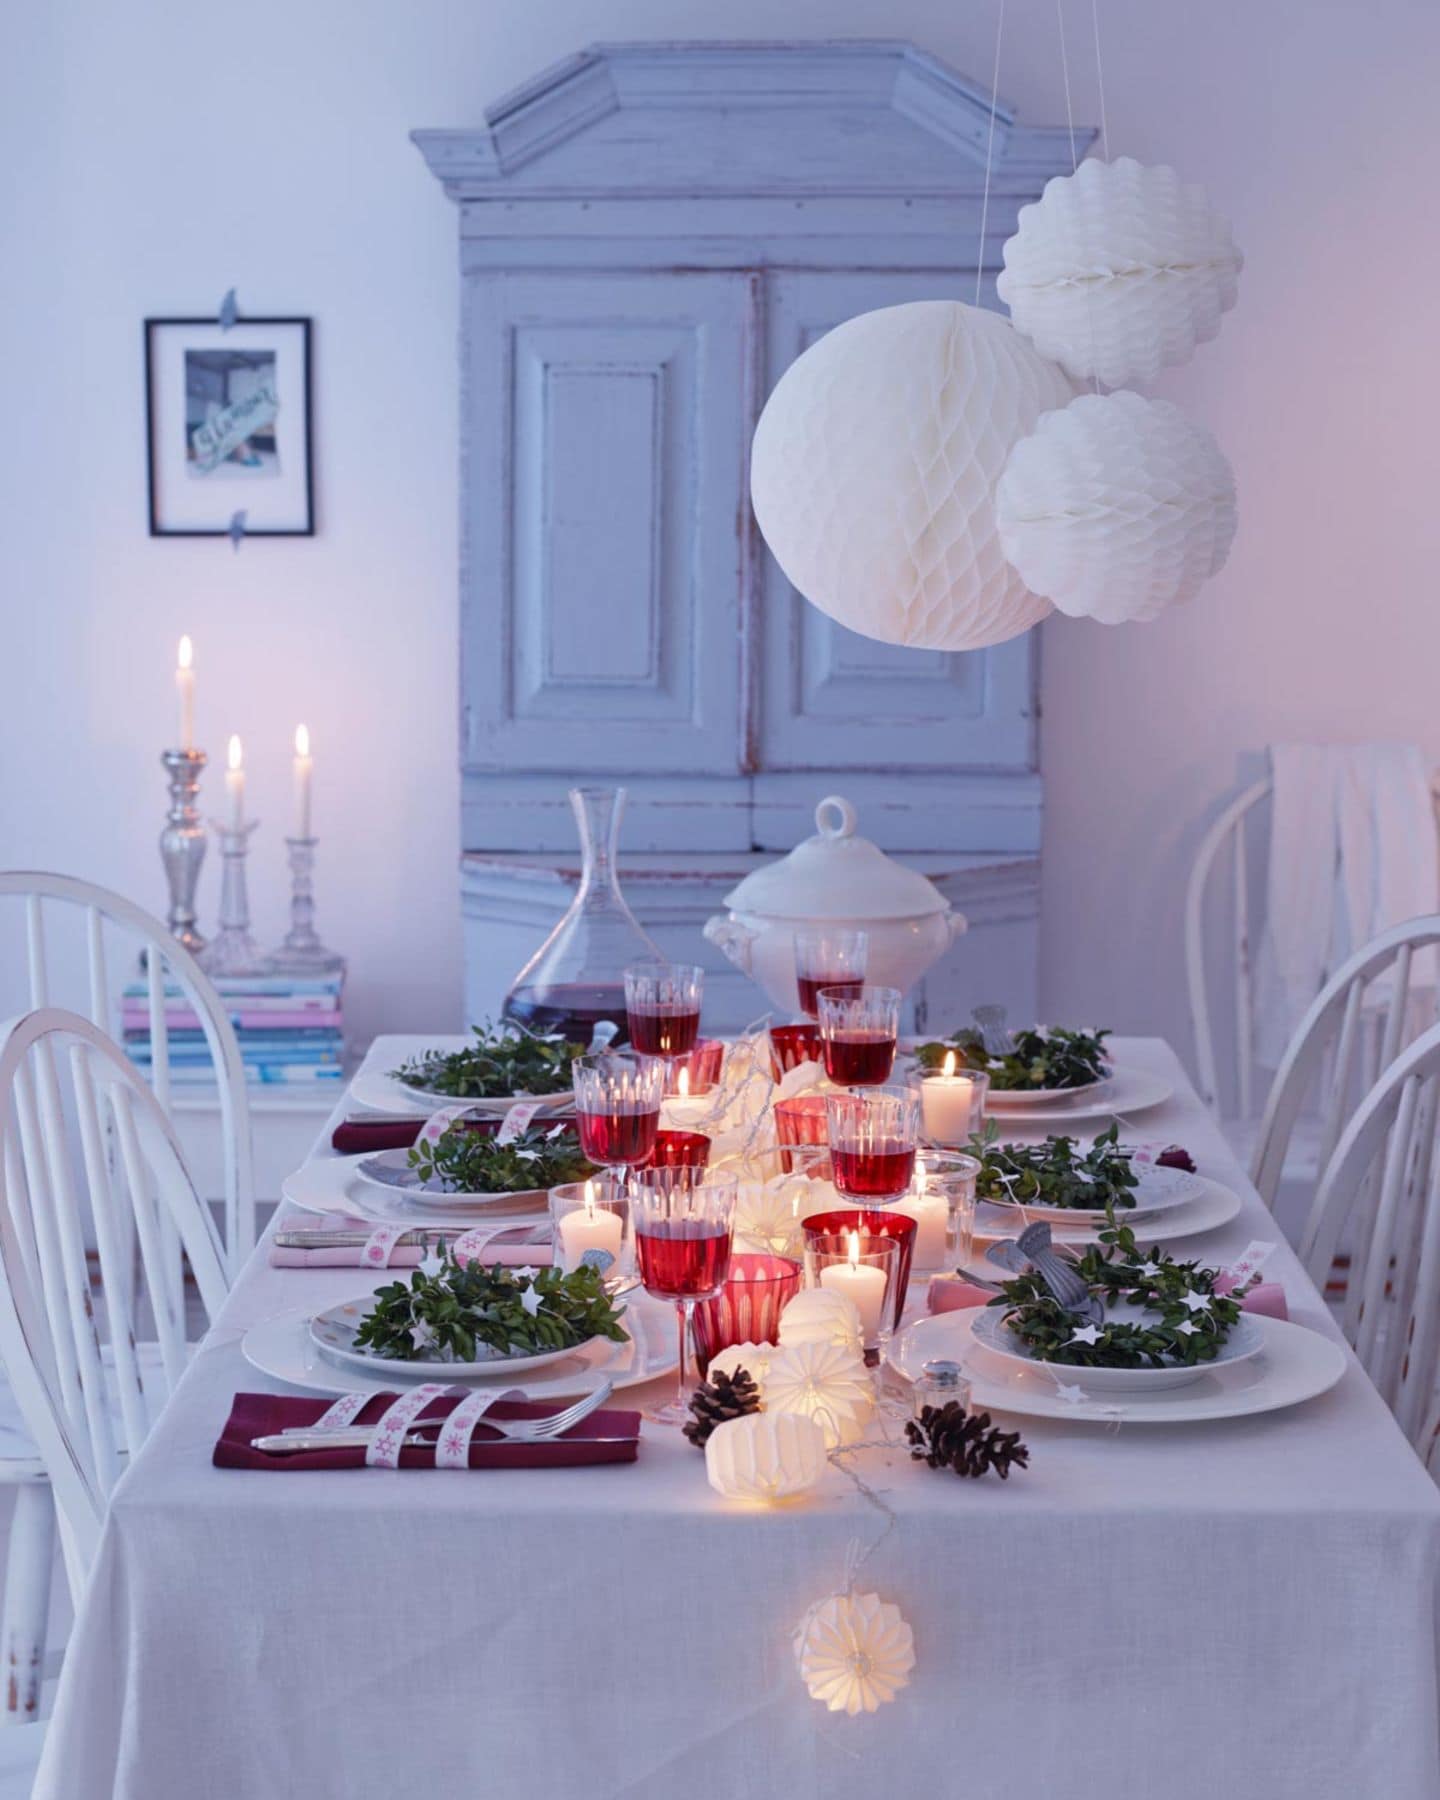 Gedeckter Festtafel fürs Weihnachtsmenü in Weiß, Silber und Rot